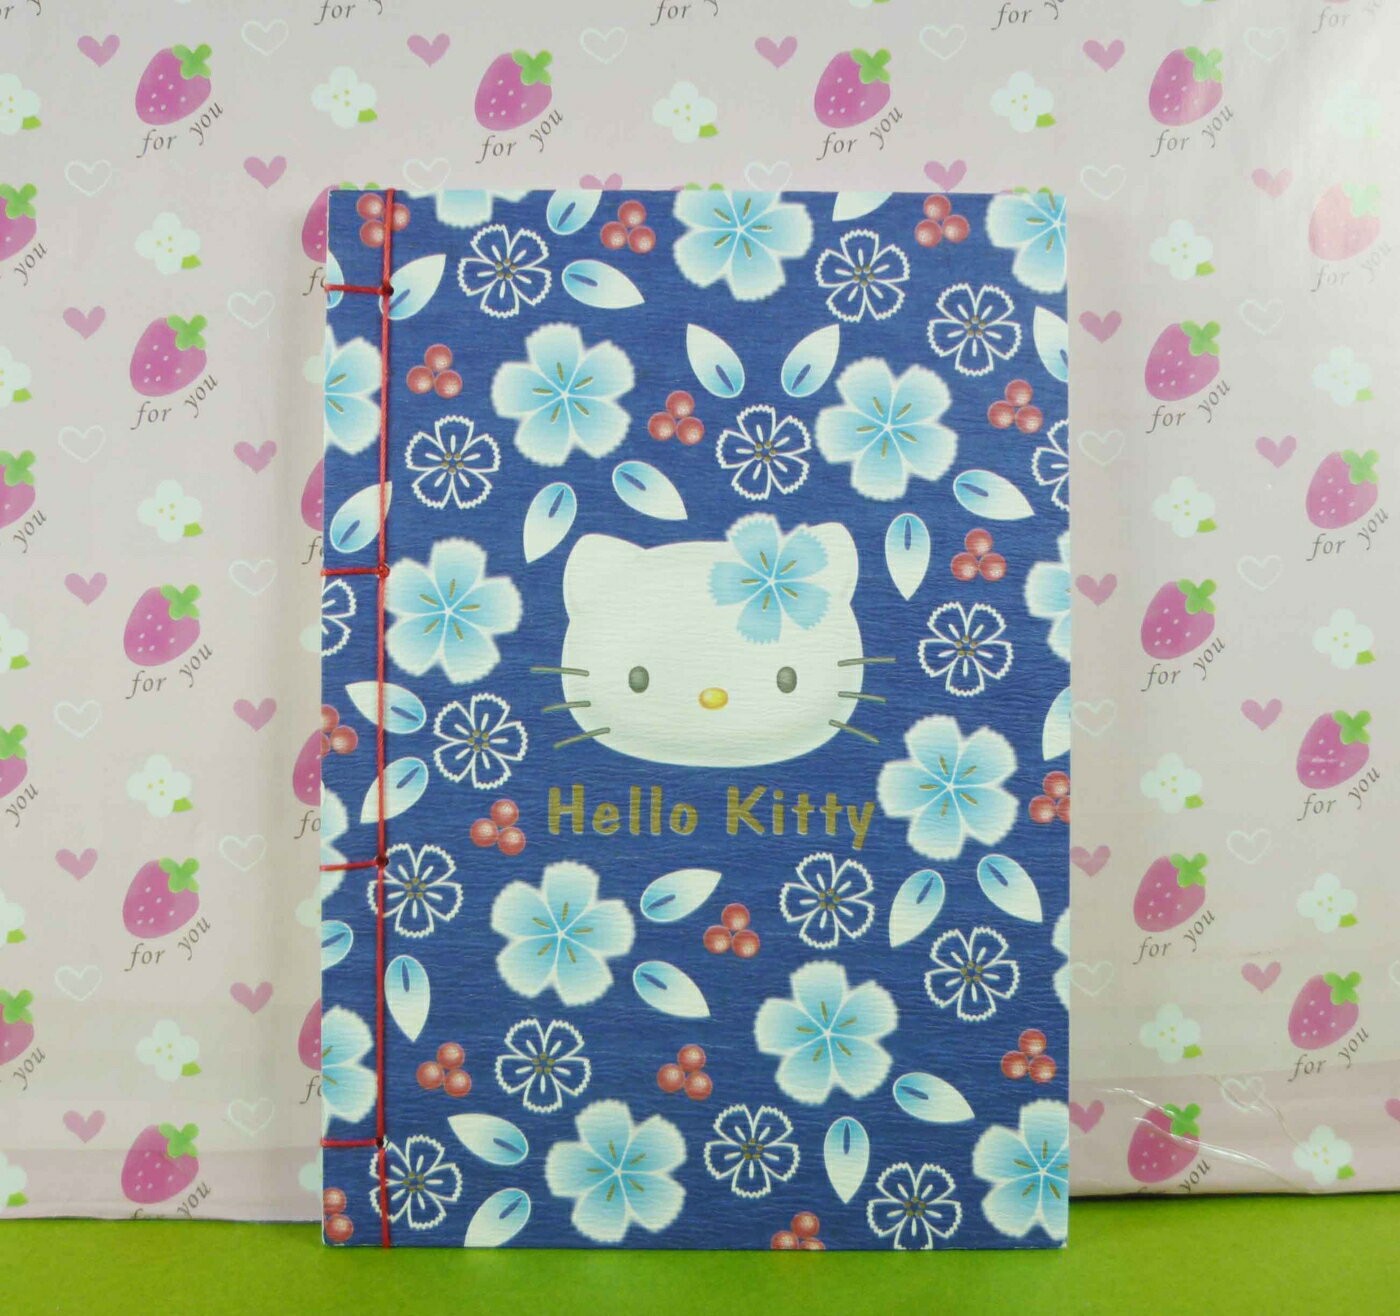 【震撼精品百貨】Hello Kitty 凱蒂貓 筆記本 和風圖案【共1款】 震撼日式精品百貨